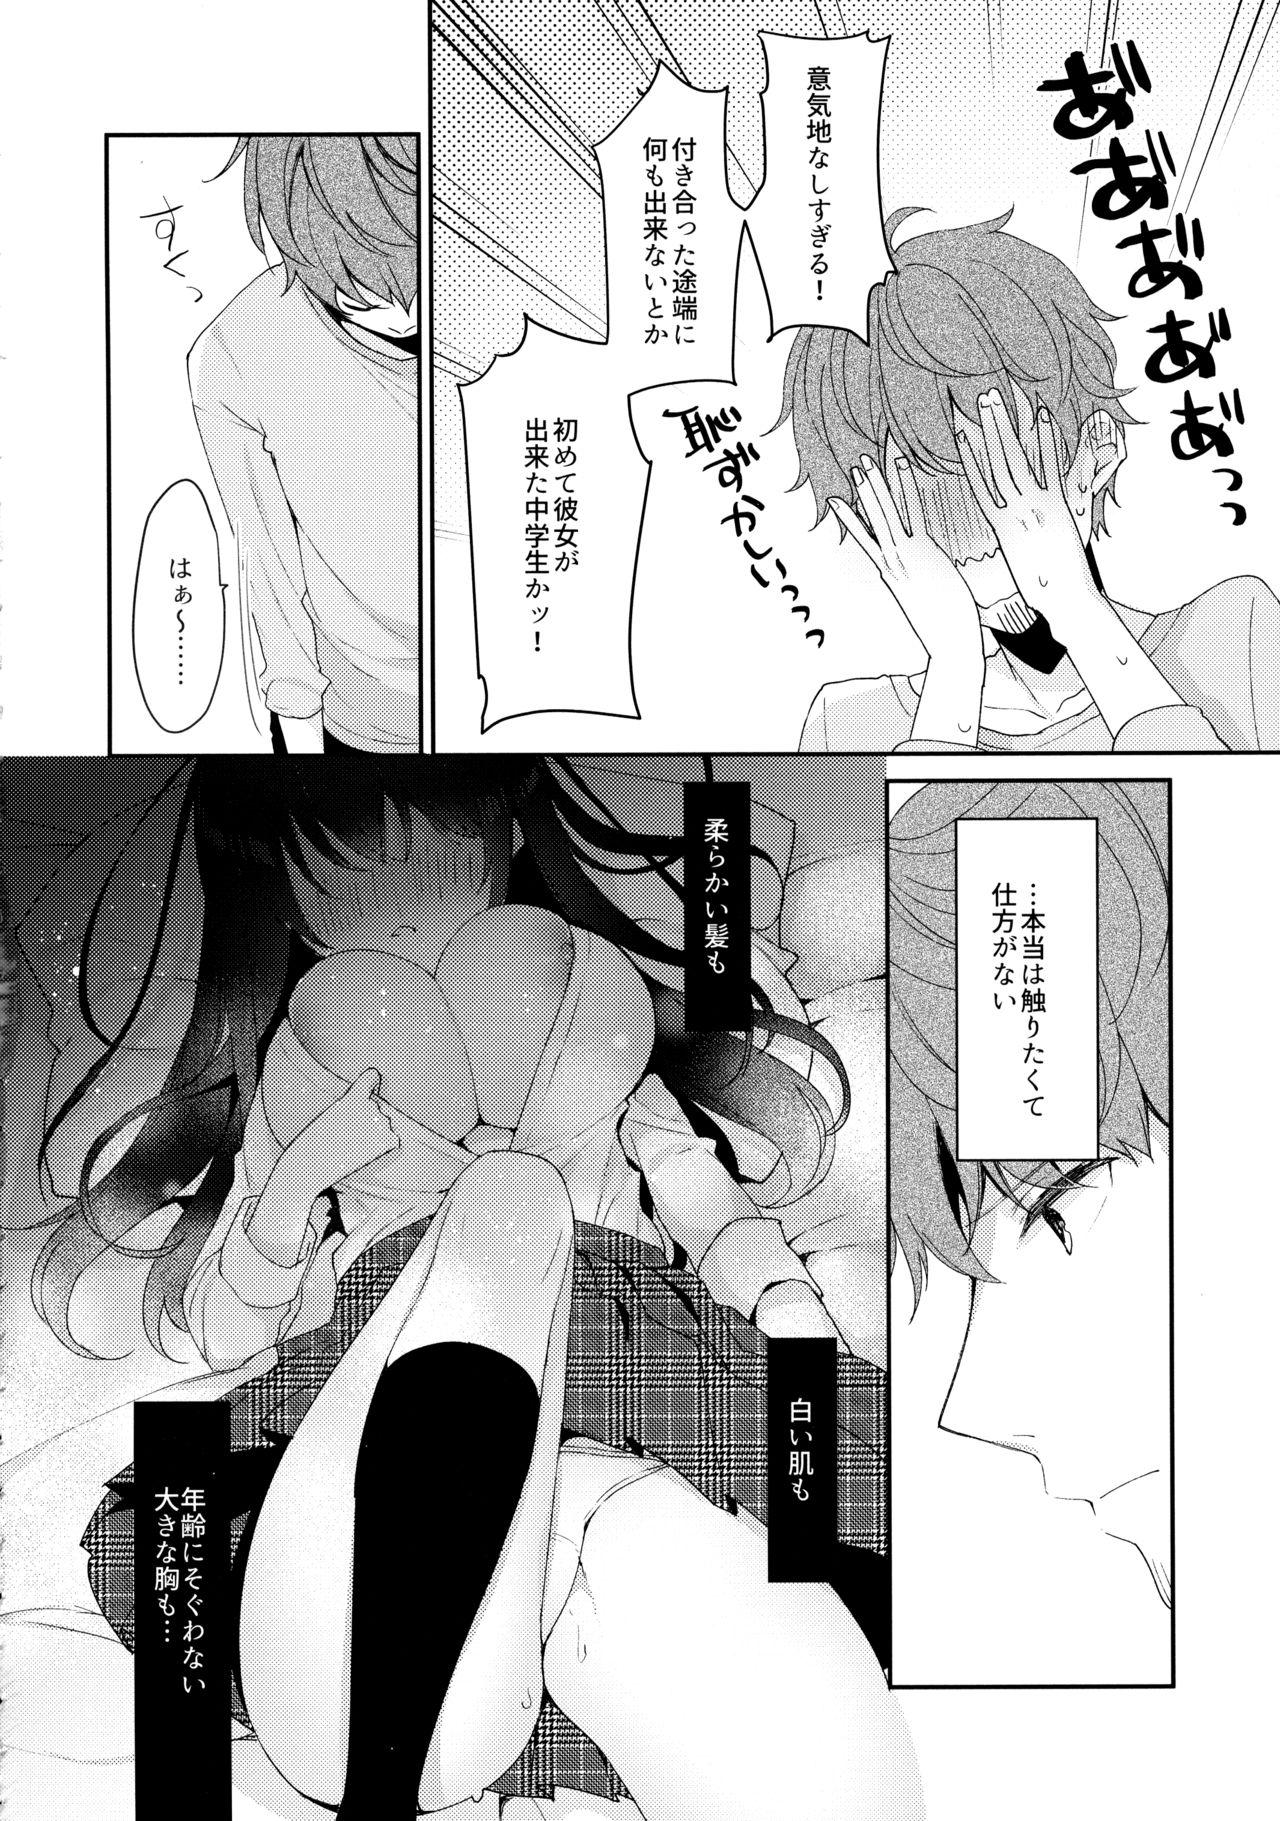 Pinay 12-sai Sa no Himitsu Renai 3 - Original Dorm - Page 7